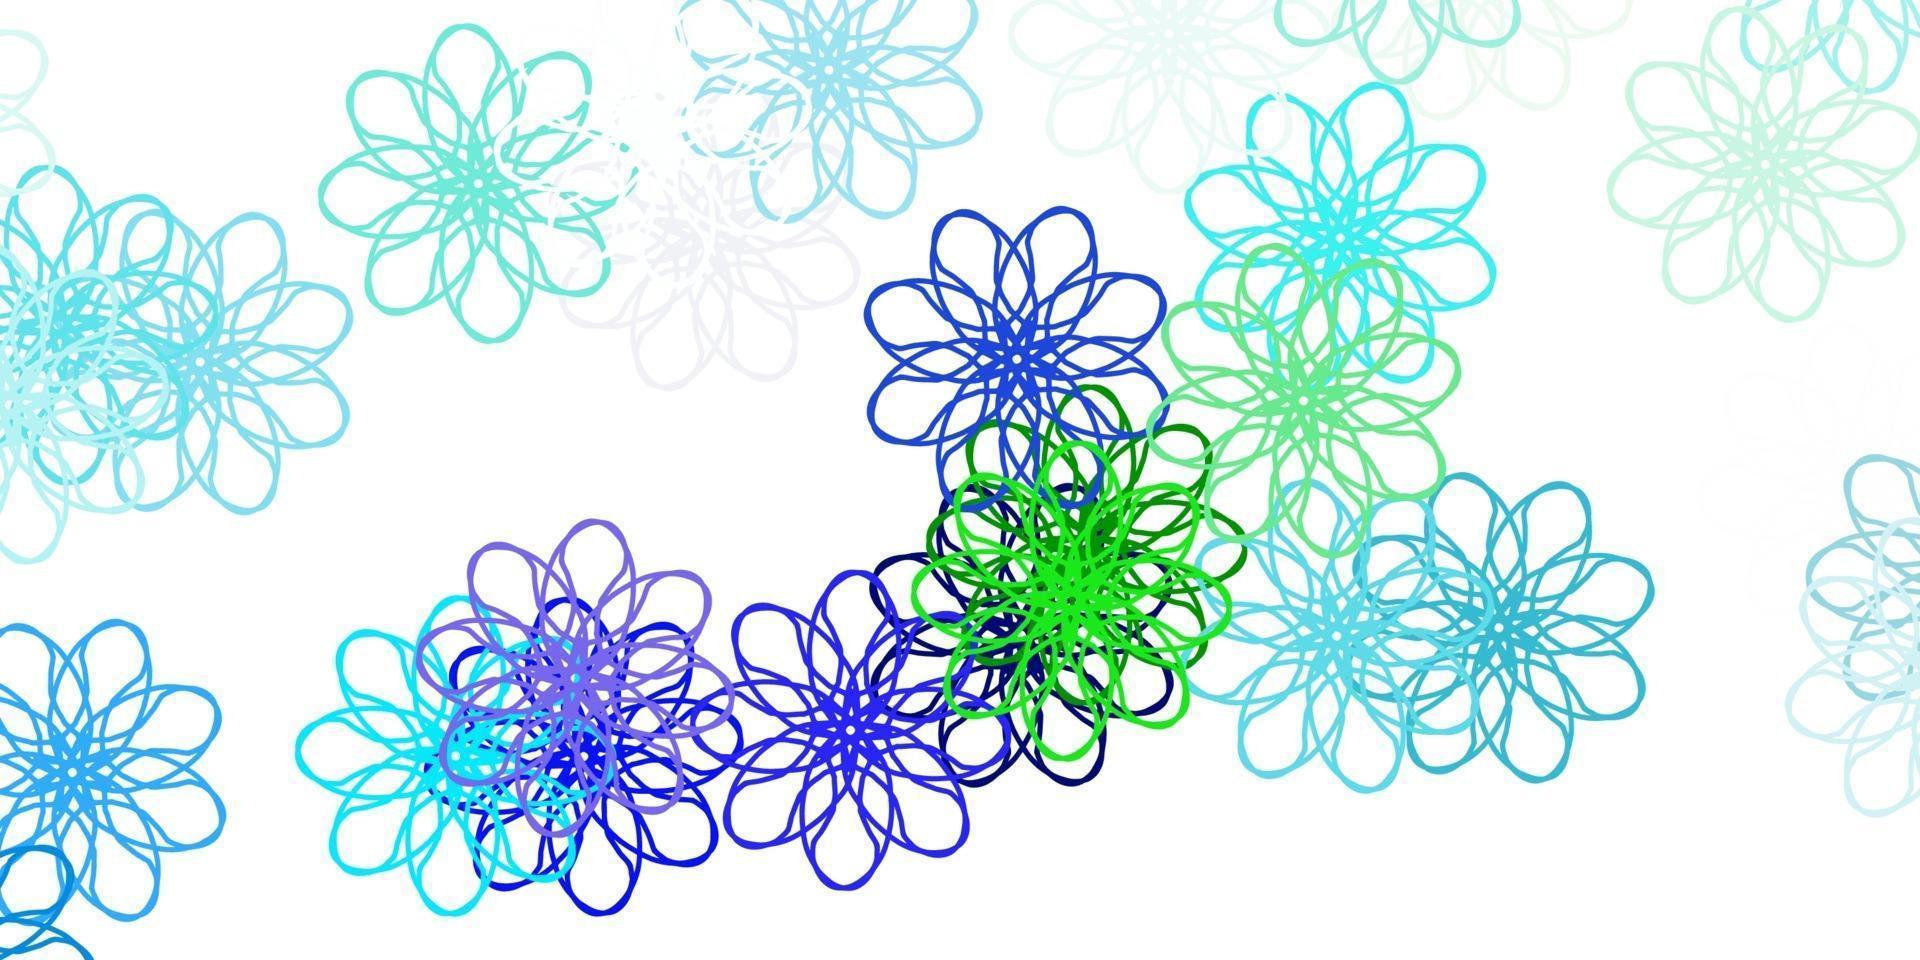 modello doodle vettoriale azzurro, verde con fiori.